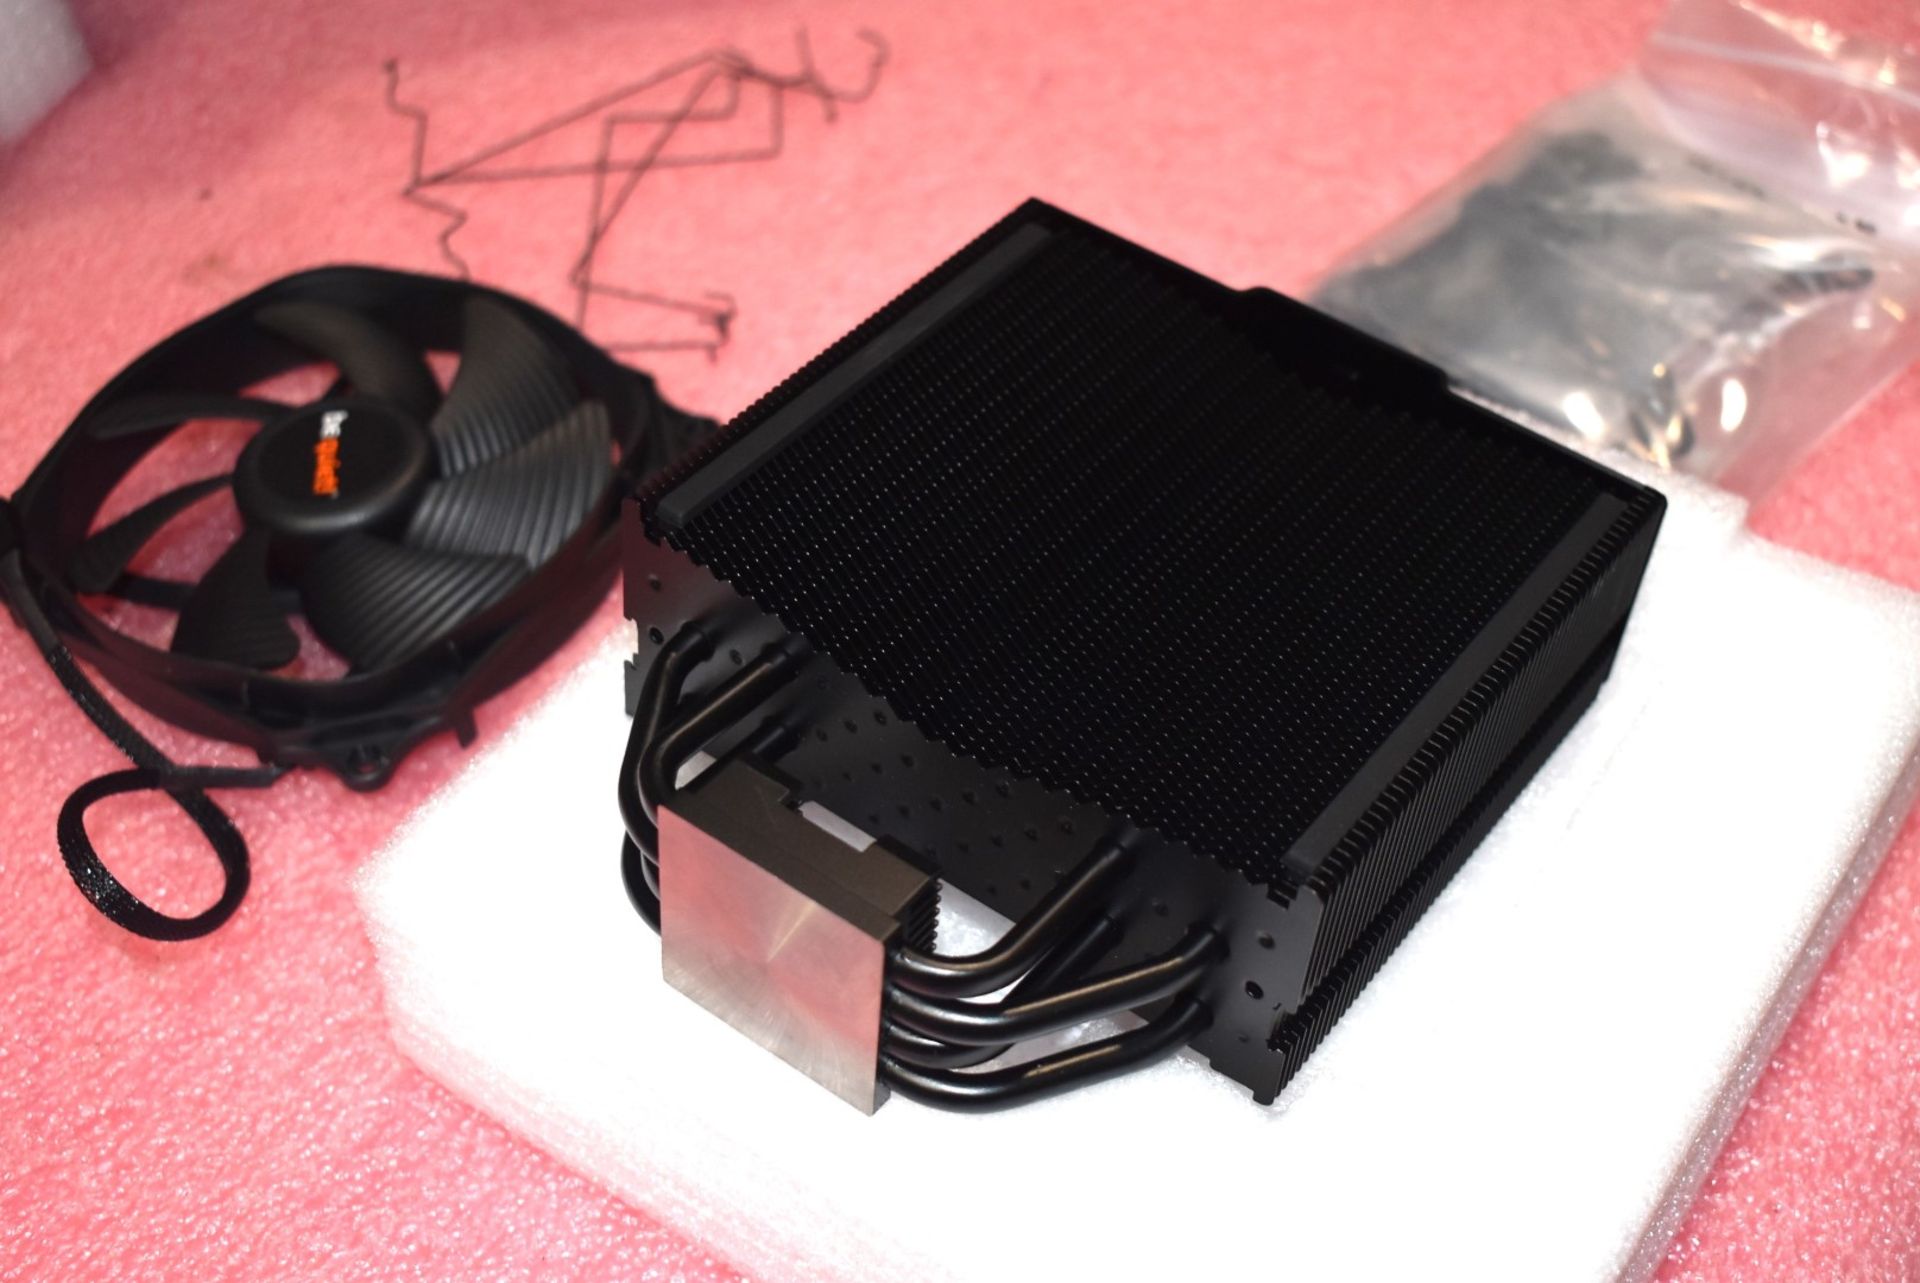 1 x BeQuiet Dark Rock Slim CPU Cooler With 120mm Fan